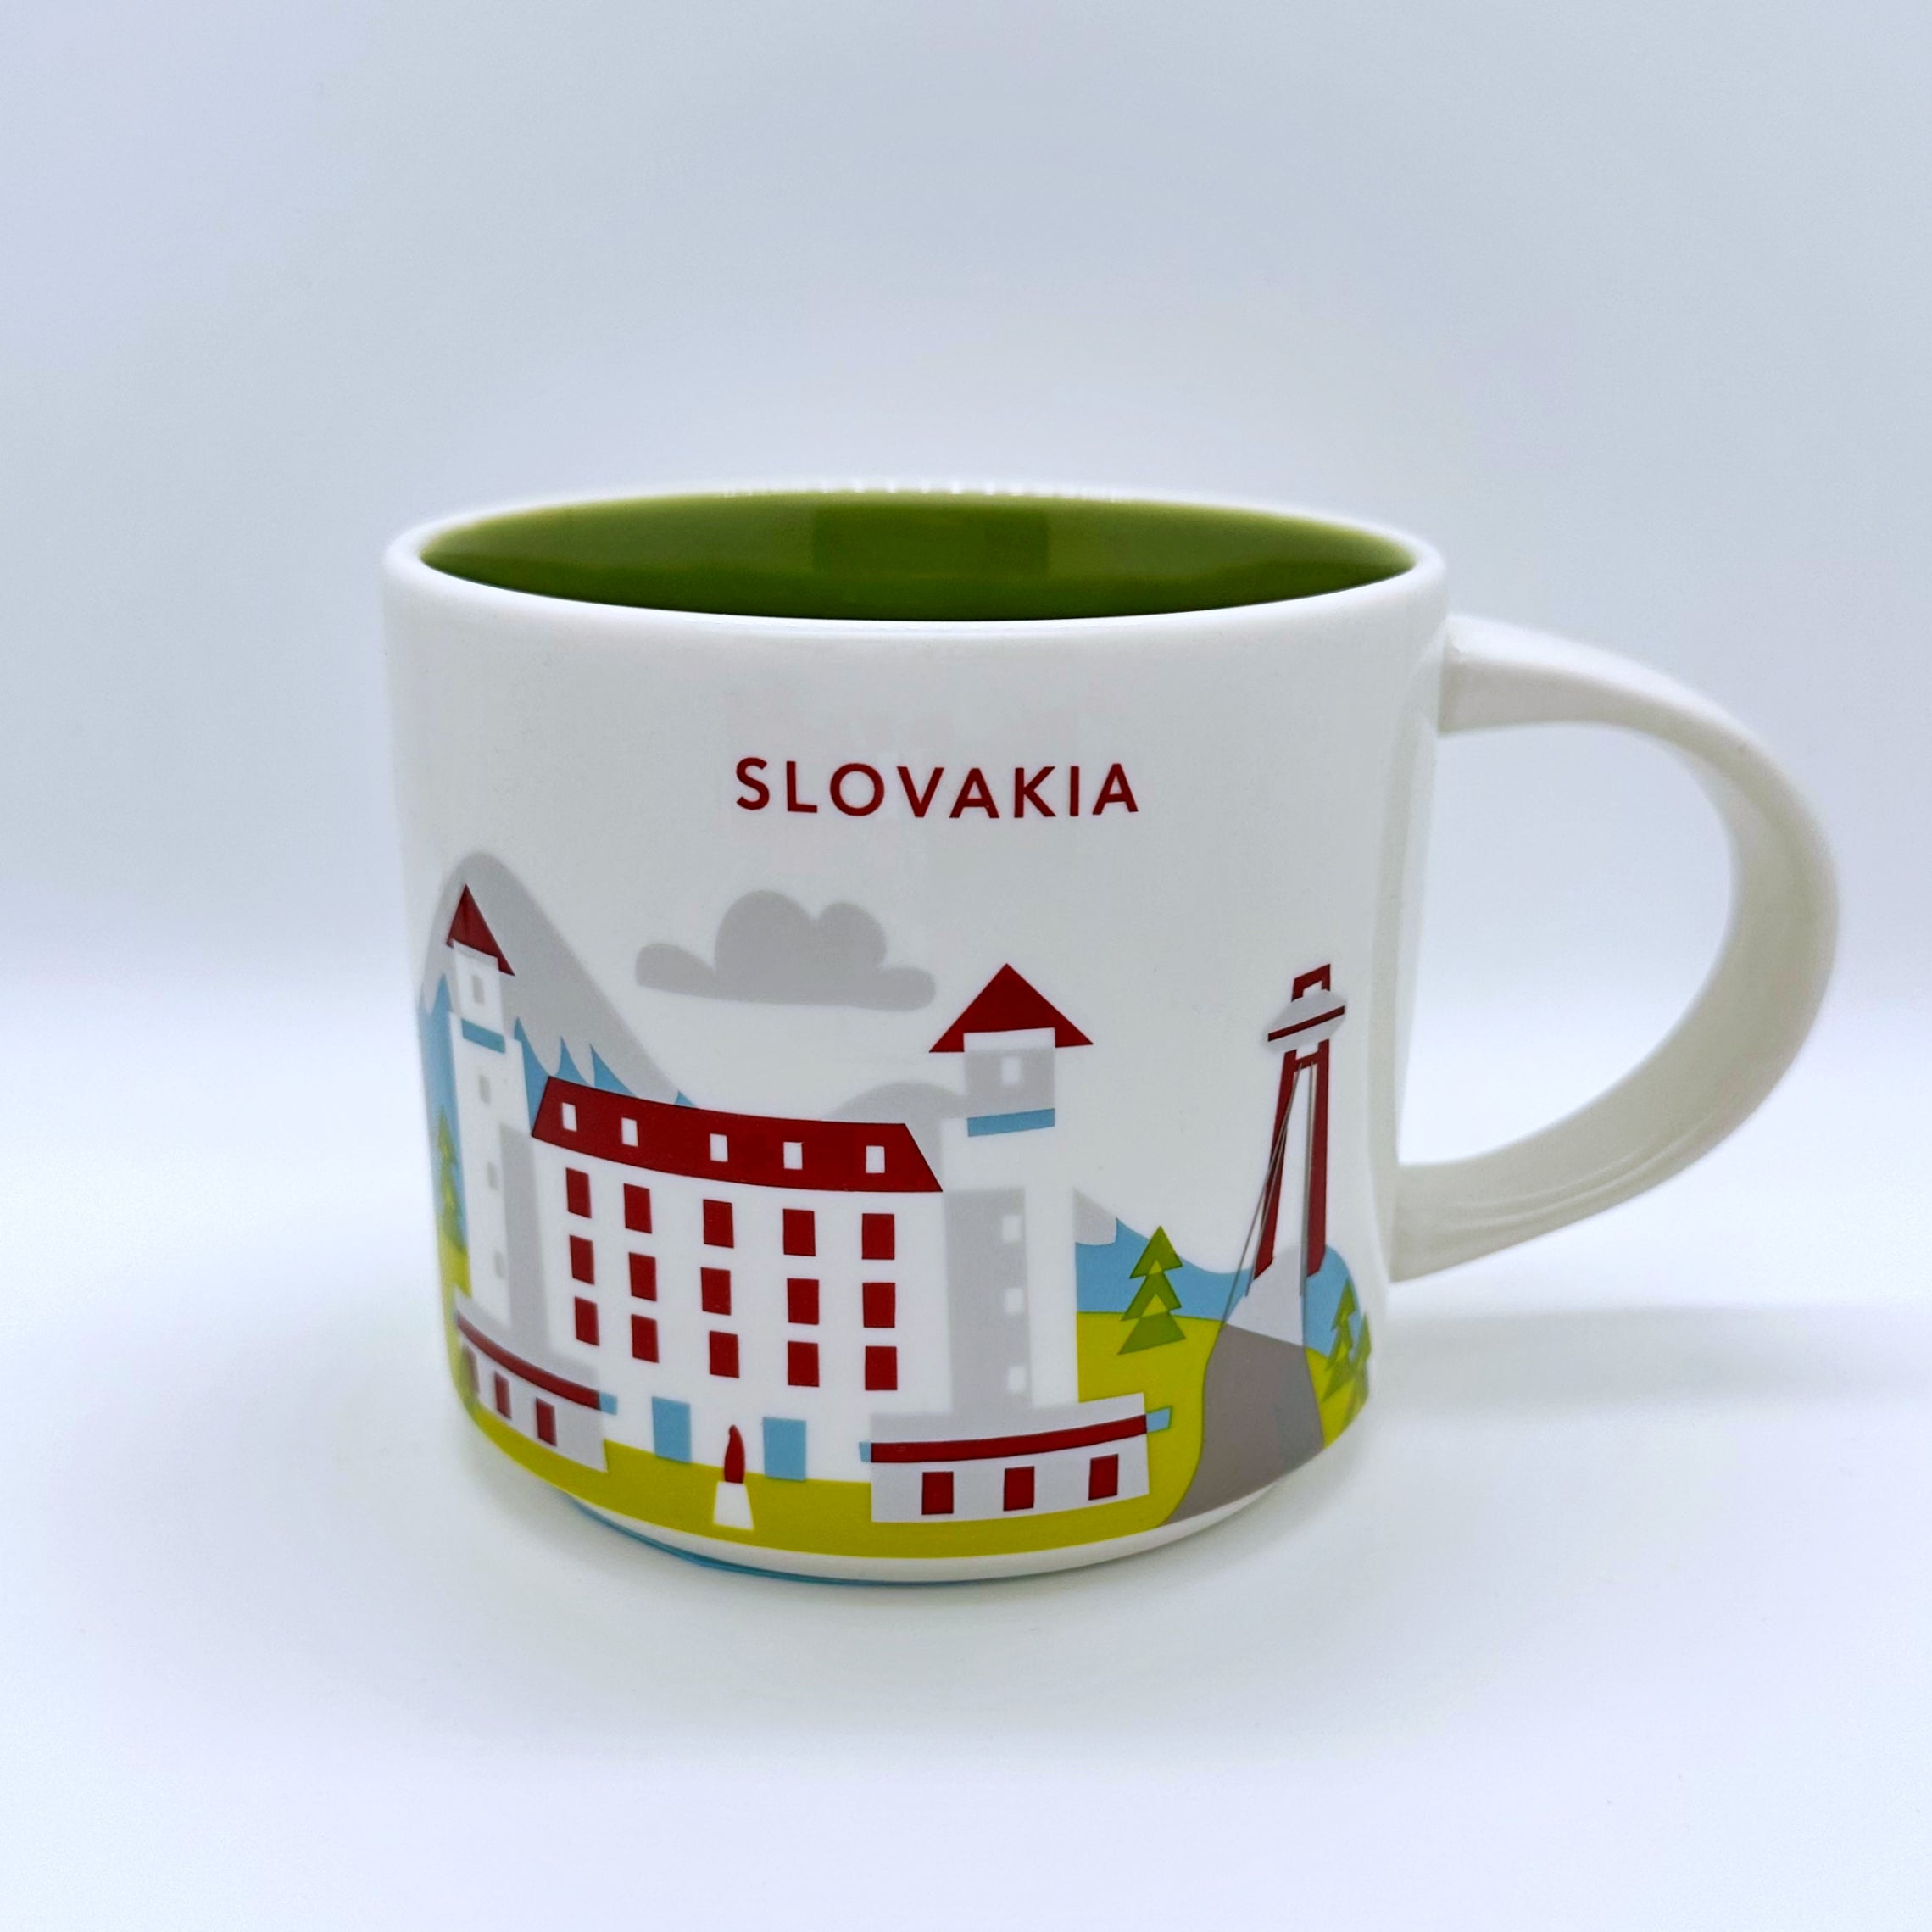 Kaffee Tee und Cappuccino Tasse von Starbucks mit gemalten Bildern aus dem Land Slovakei